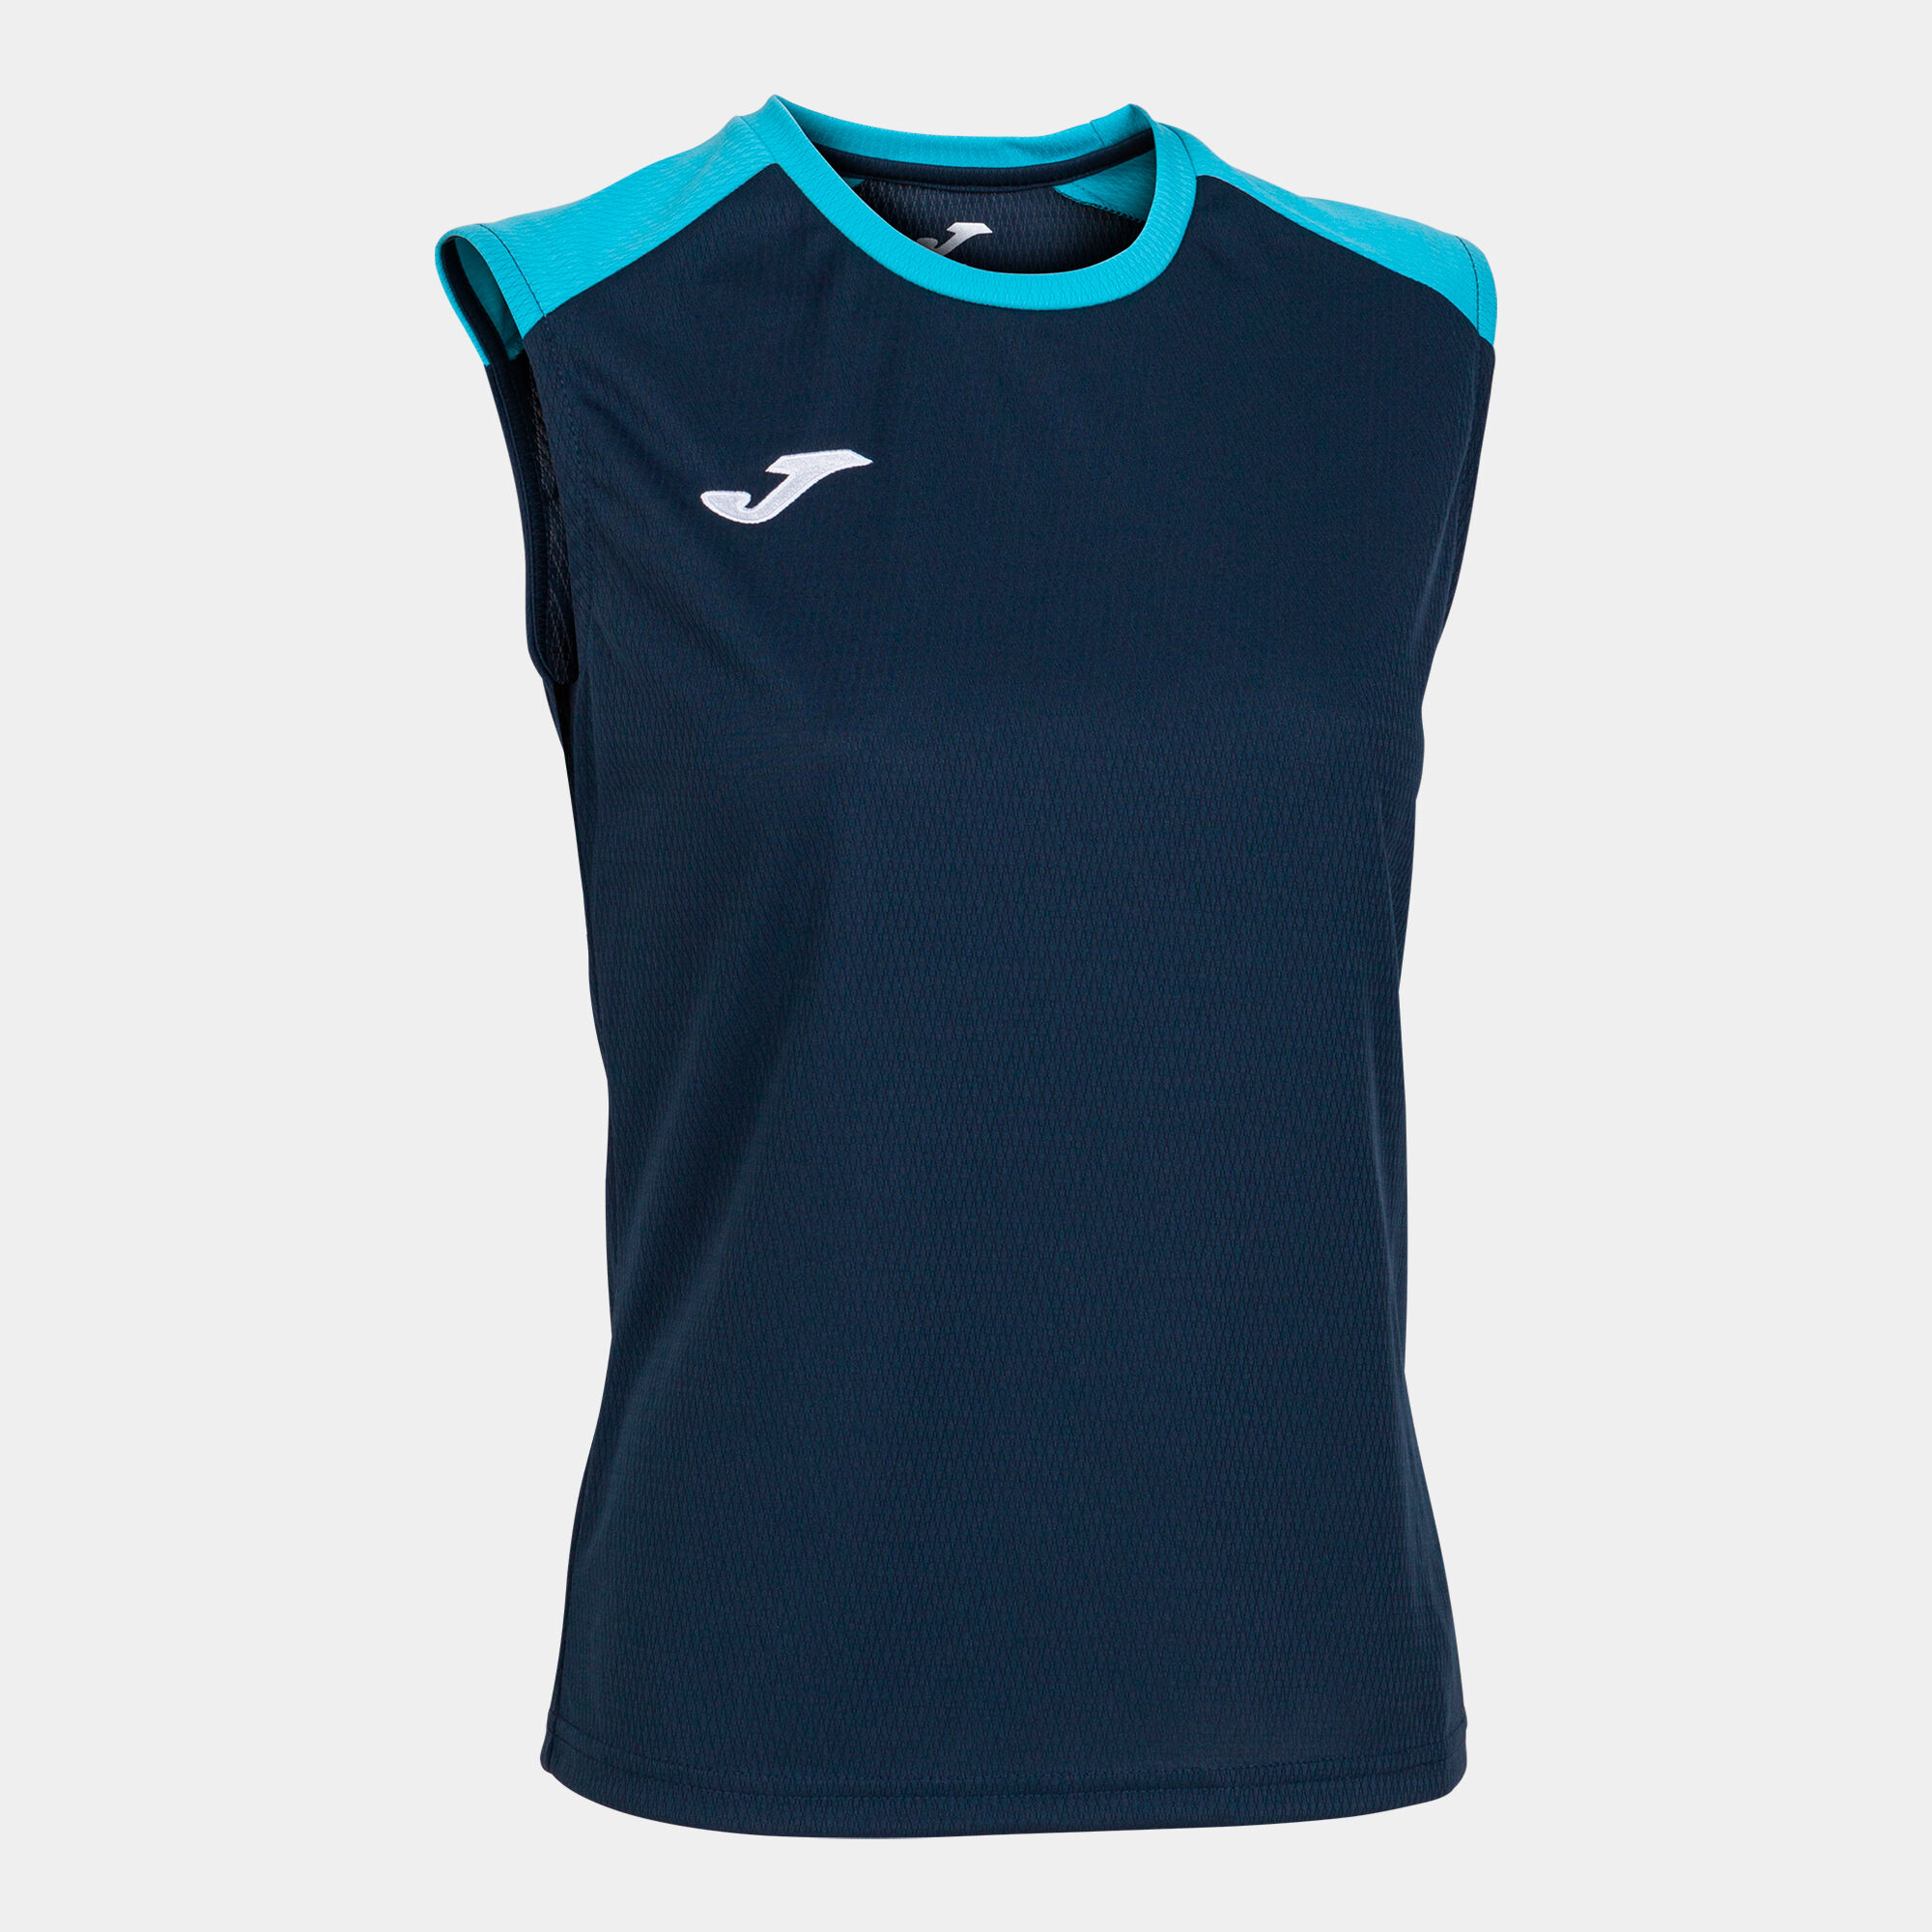 T-shirt de alça mulher Eco Championship azul marinho azul-turquesa fluorescente